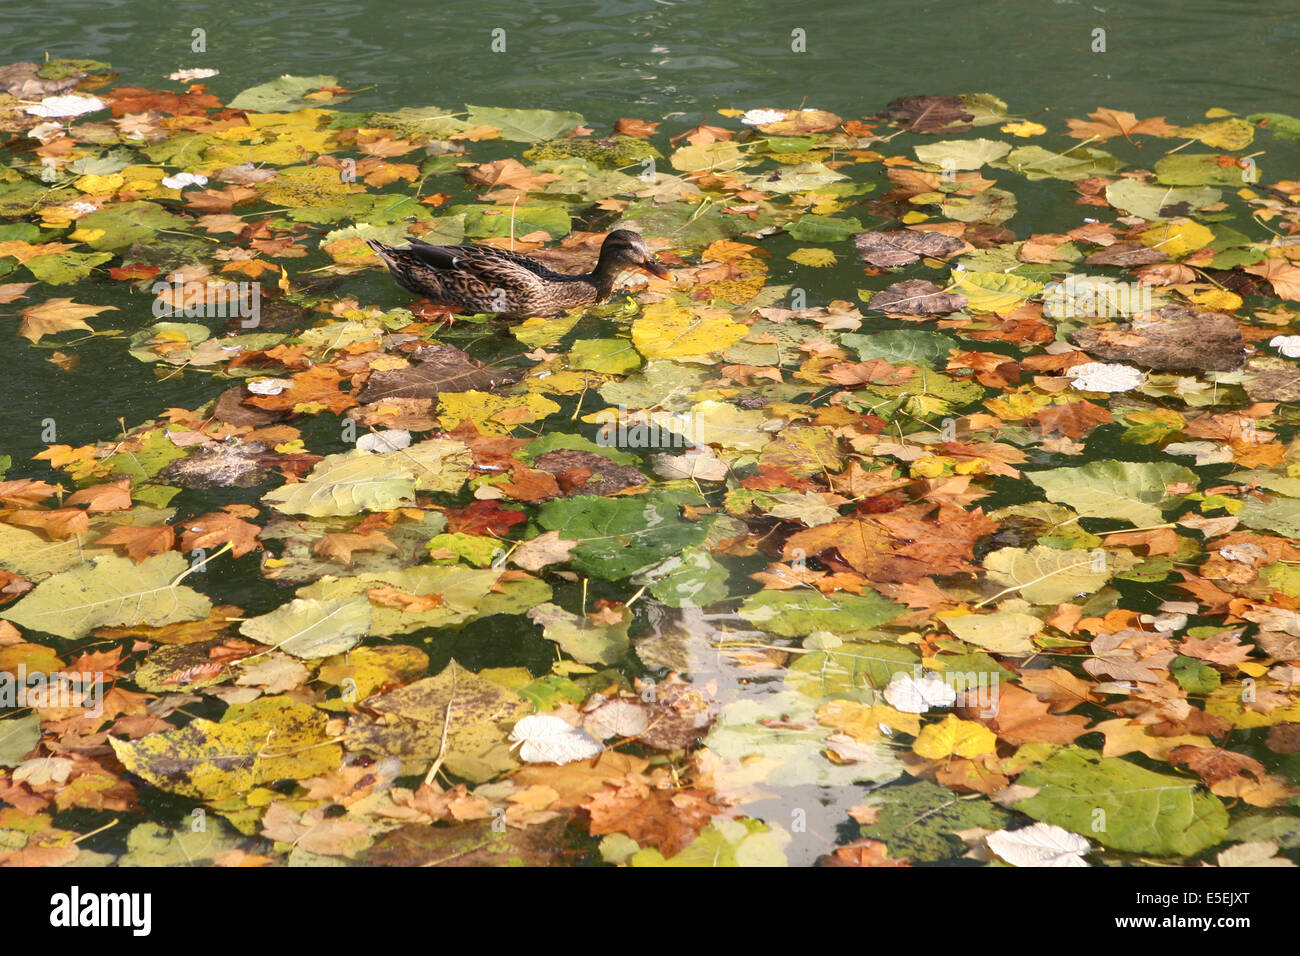 France, paris 10e, canal saint martin, feuilles mortes et canard, Stock Photo